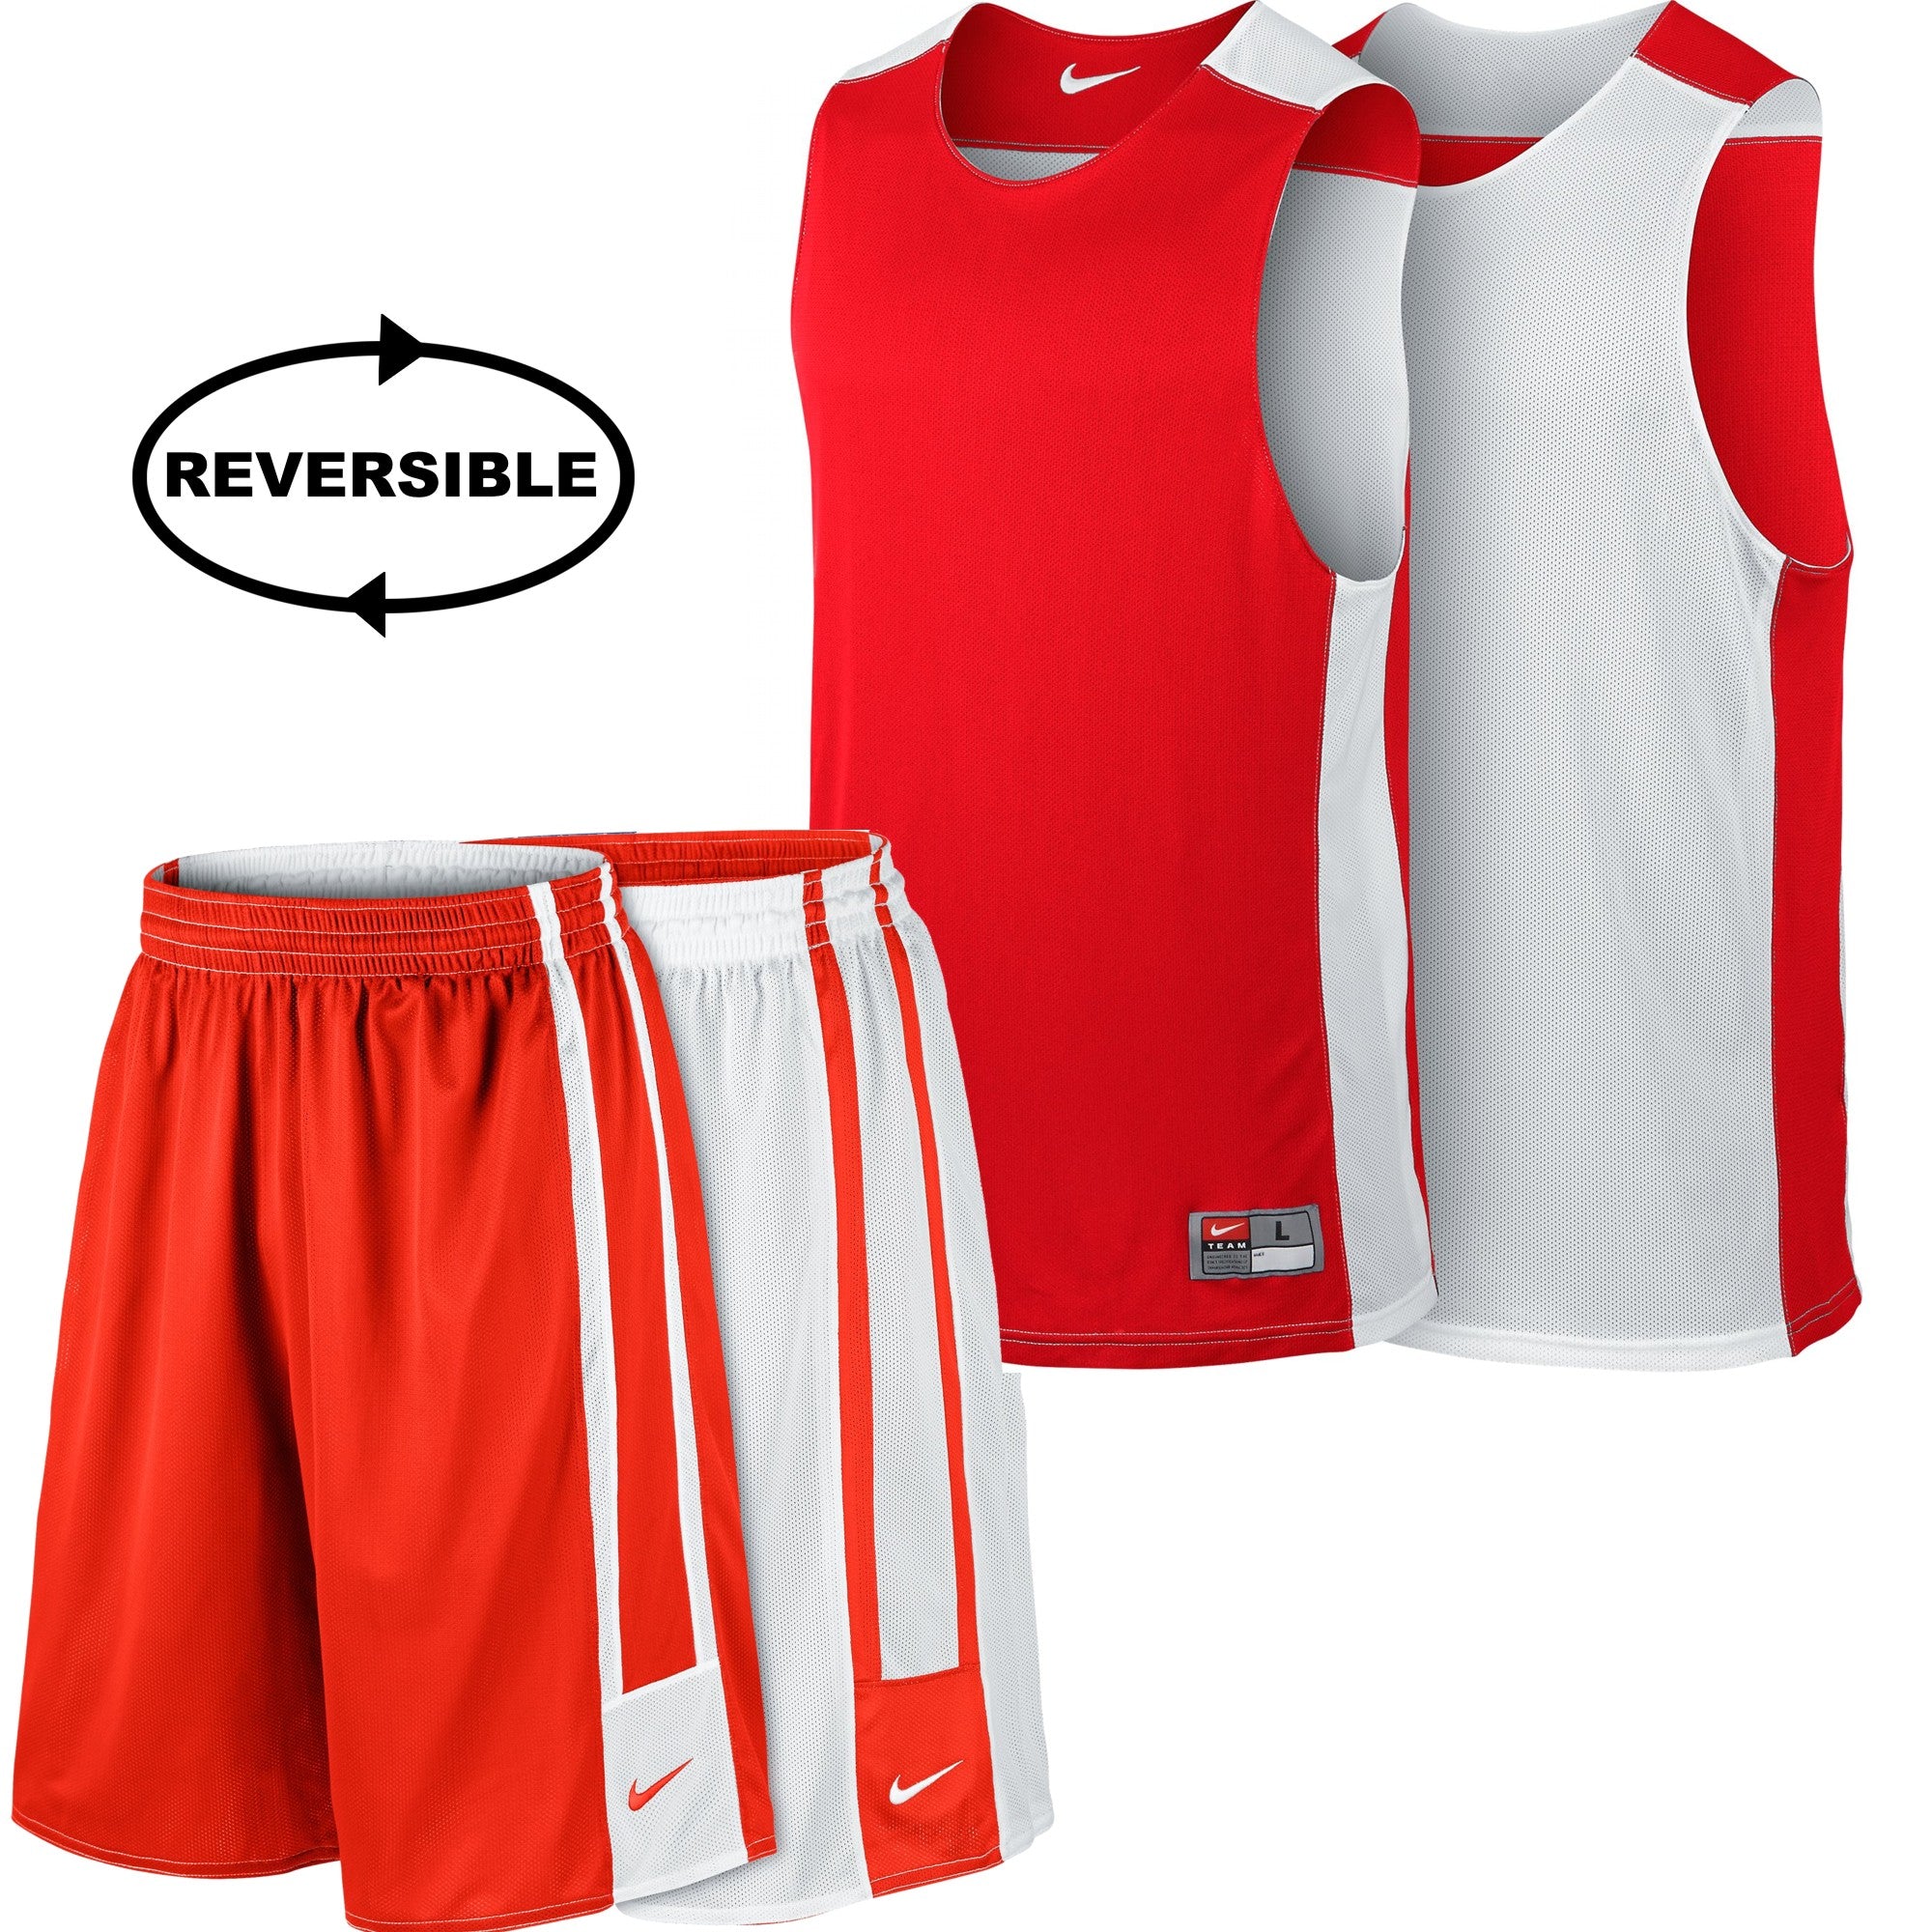 Nike Basketball League Reversible Basketball Kit - NK-626702-658-553403-658